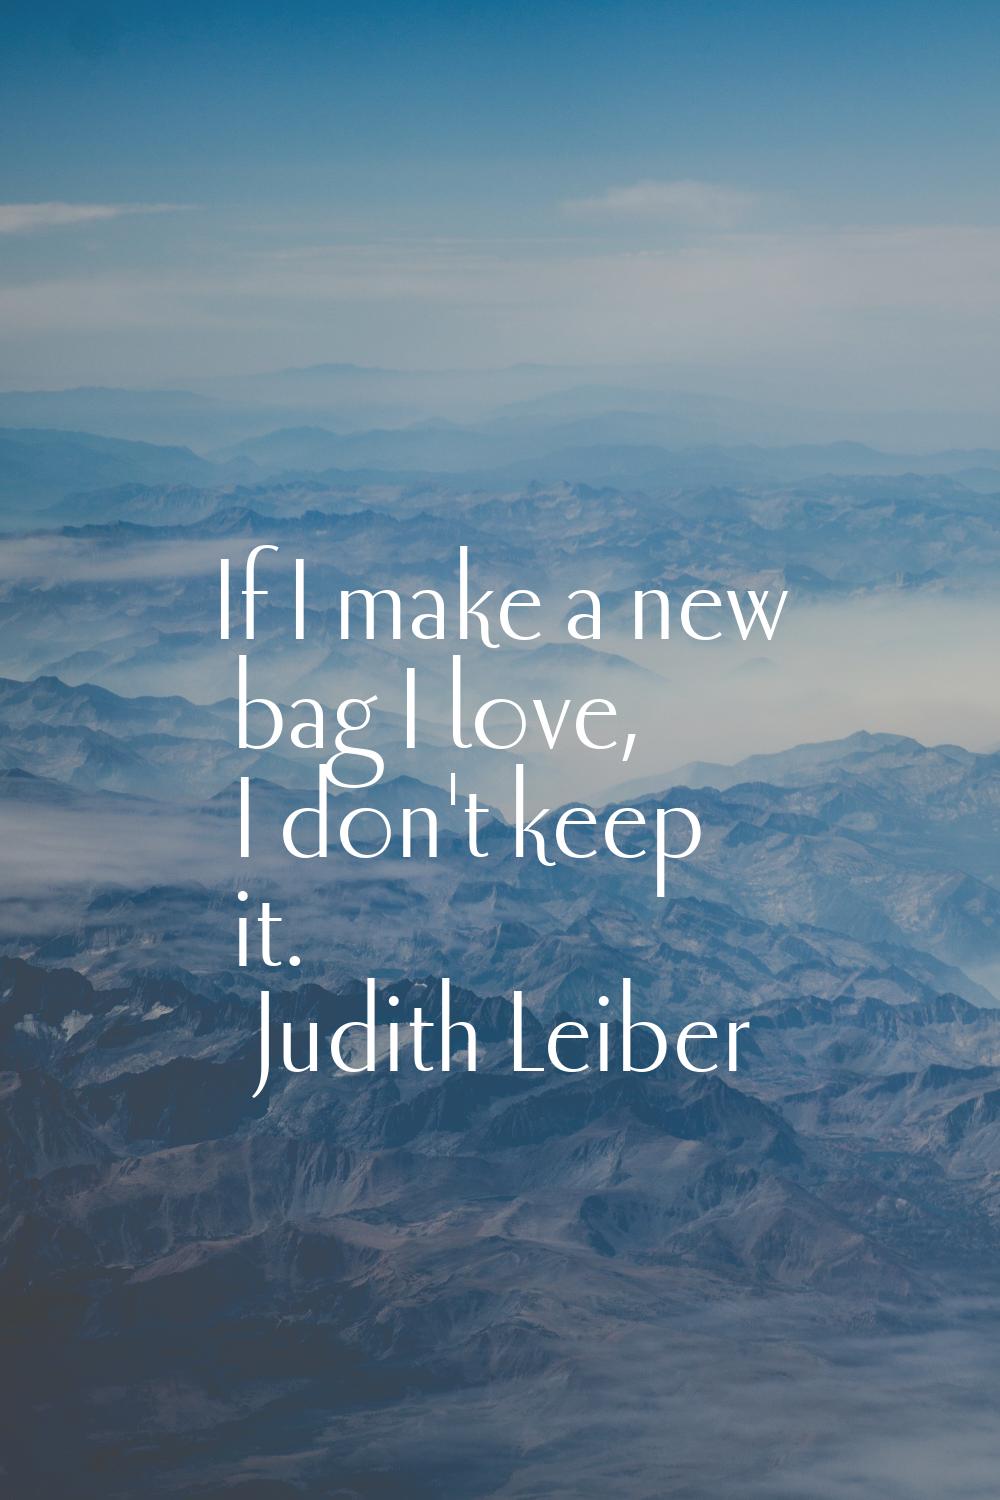 If I make a new bag I love, I don't keep it.